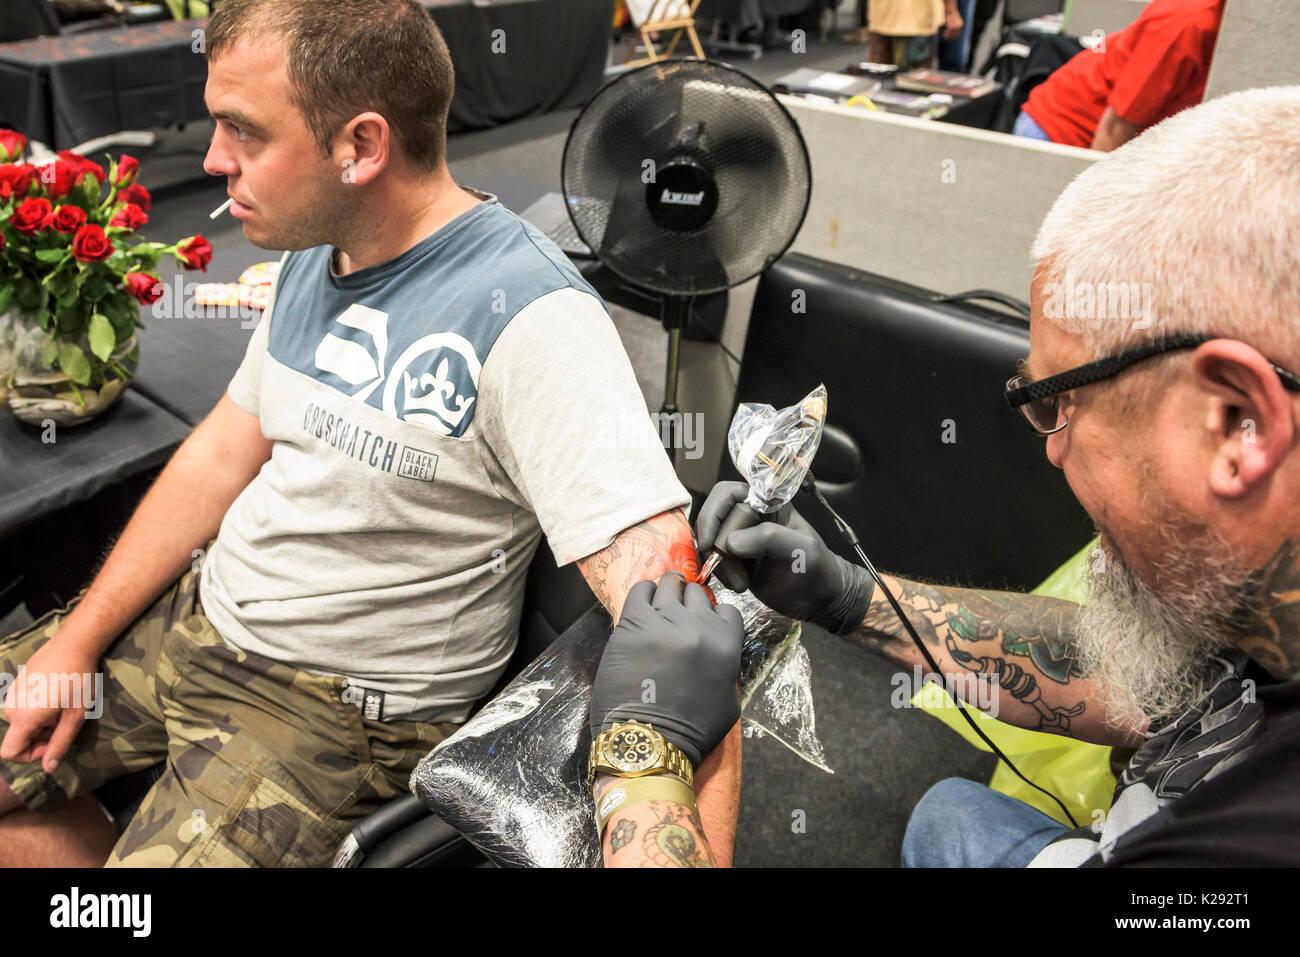 Tatuaggio - Giovanni da Hells Gates Tattoo Studio tatuaggio al braccio di un cliente al Cornwall Tattoo Convention. Foto Stock